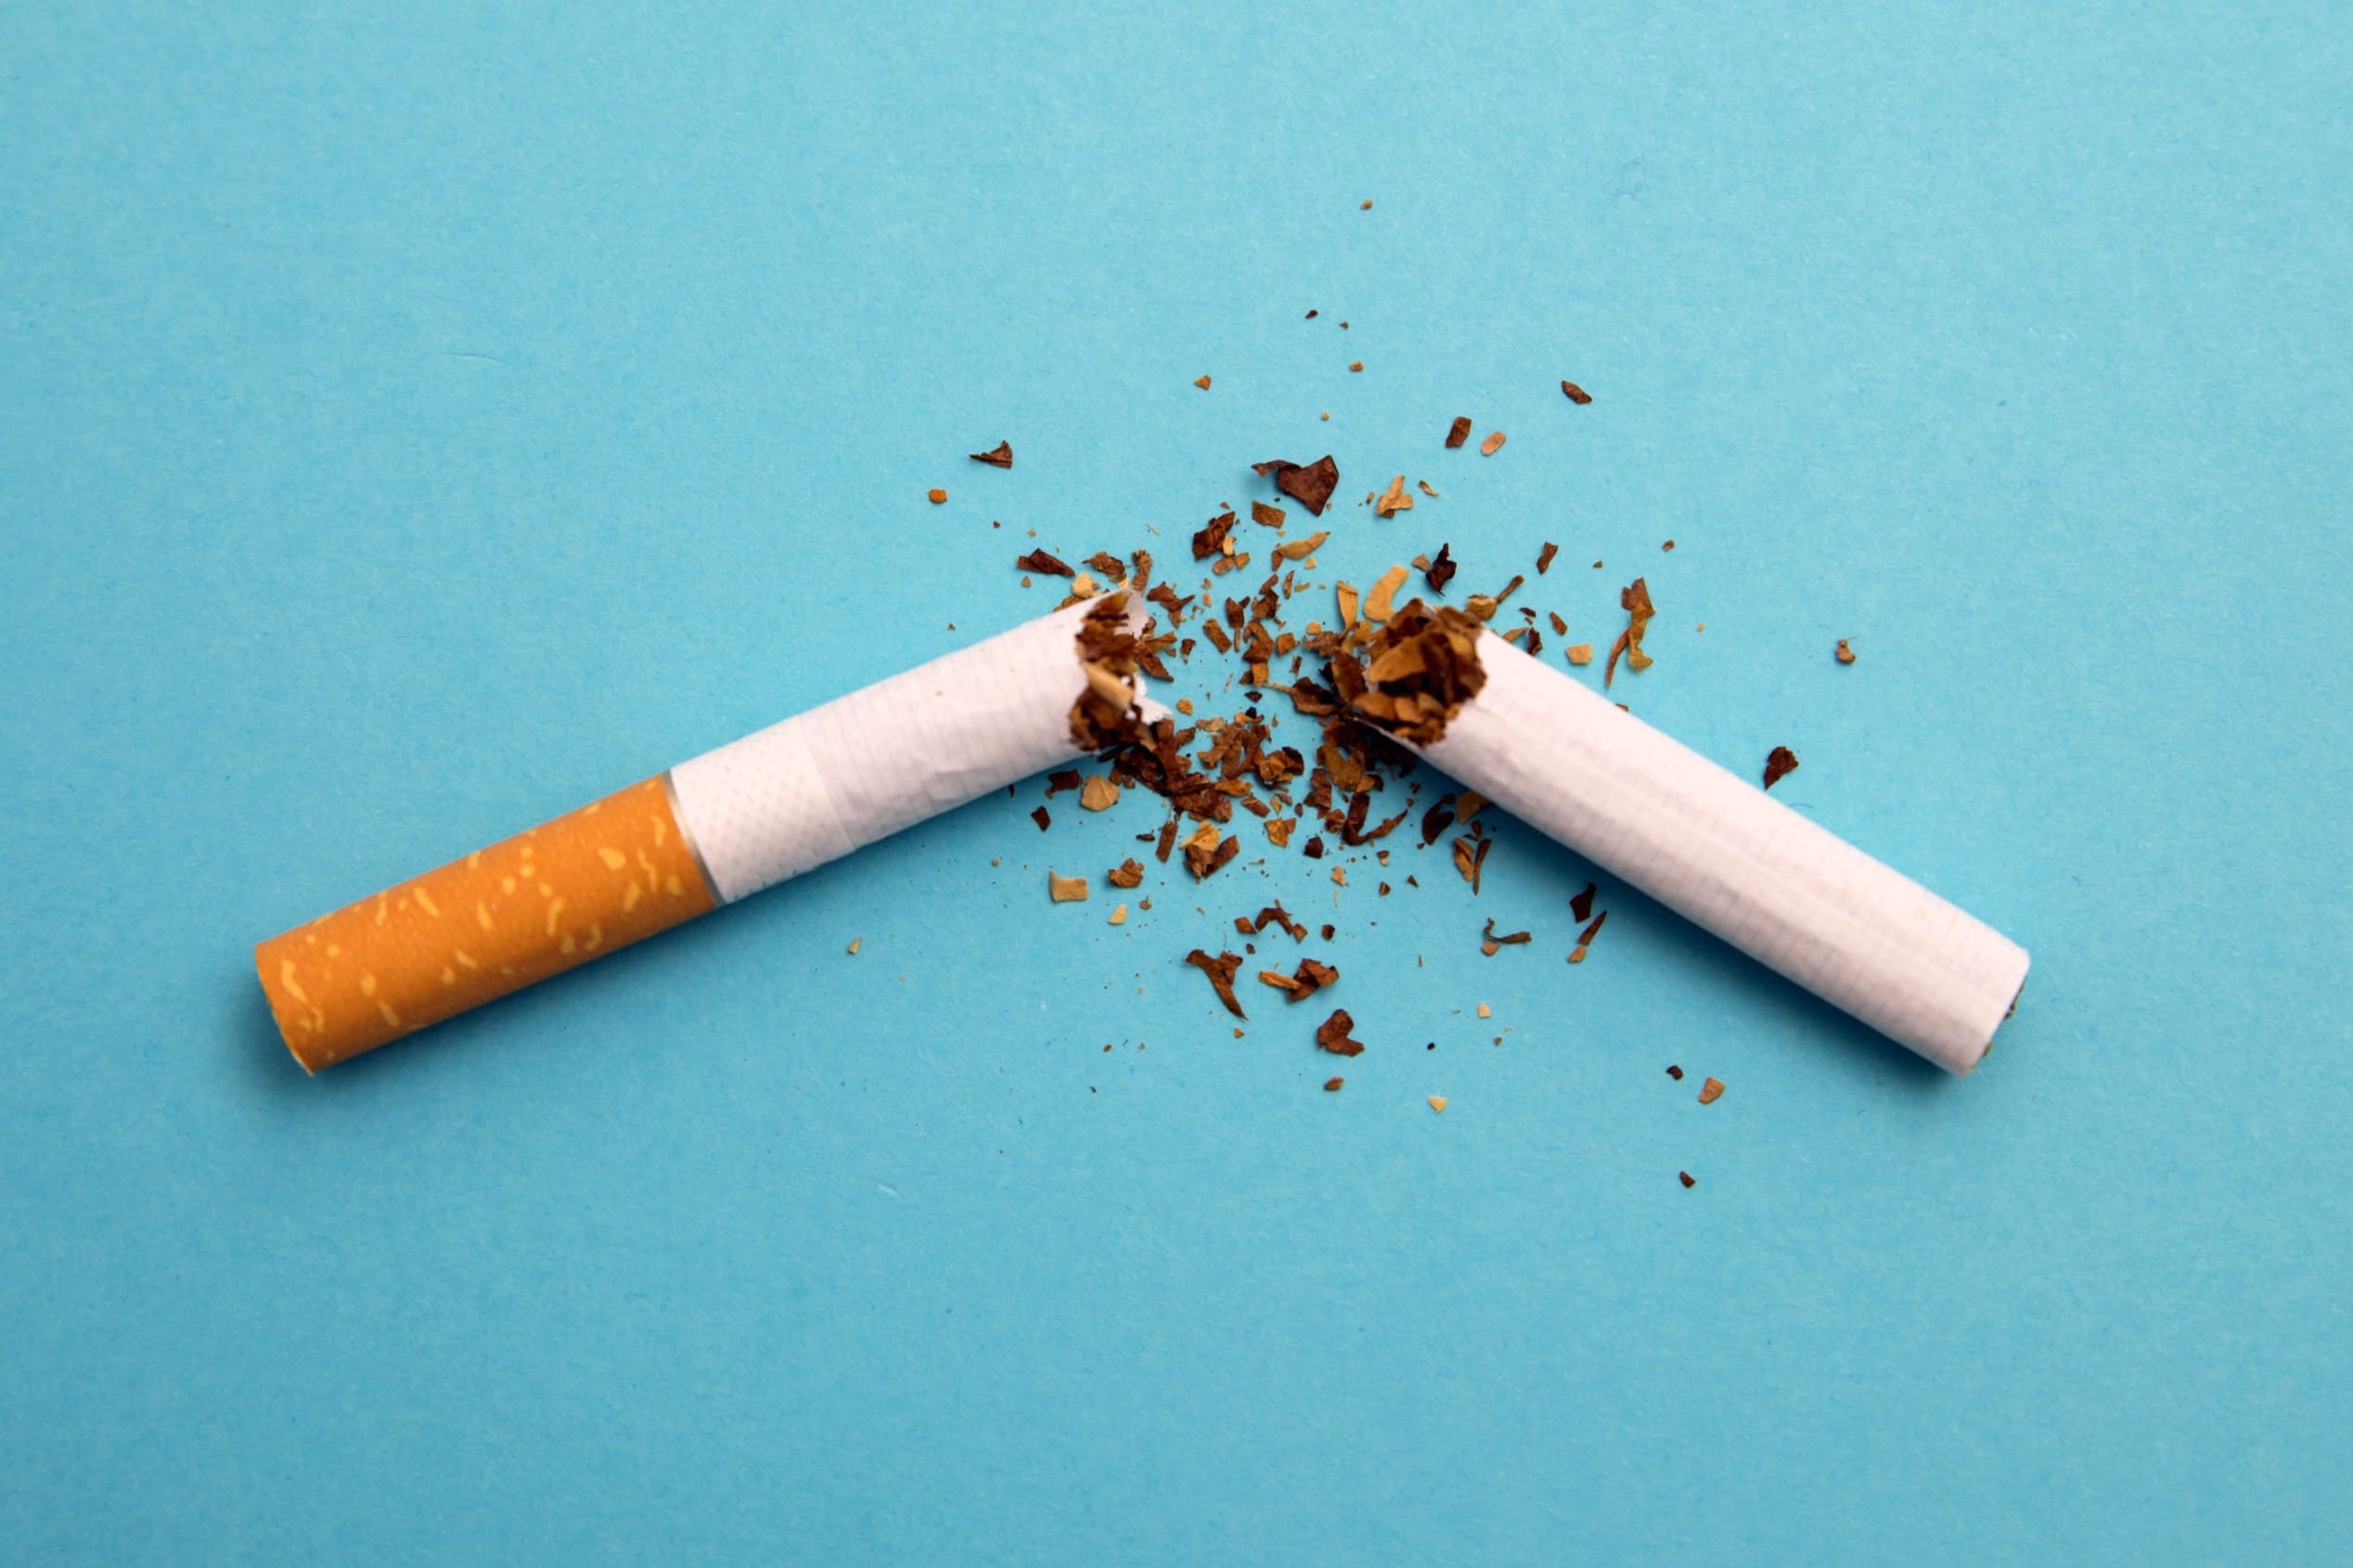 Quit smoking: 10 tips